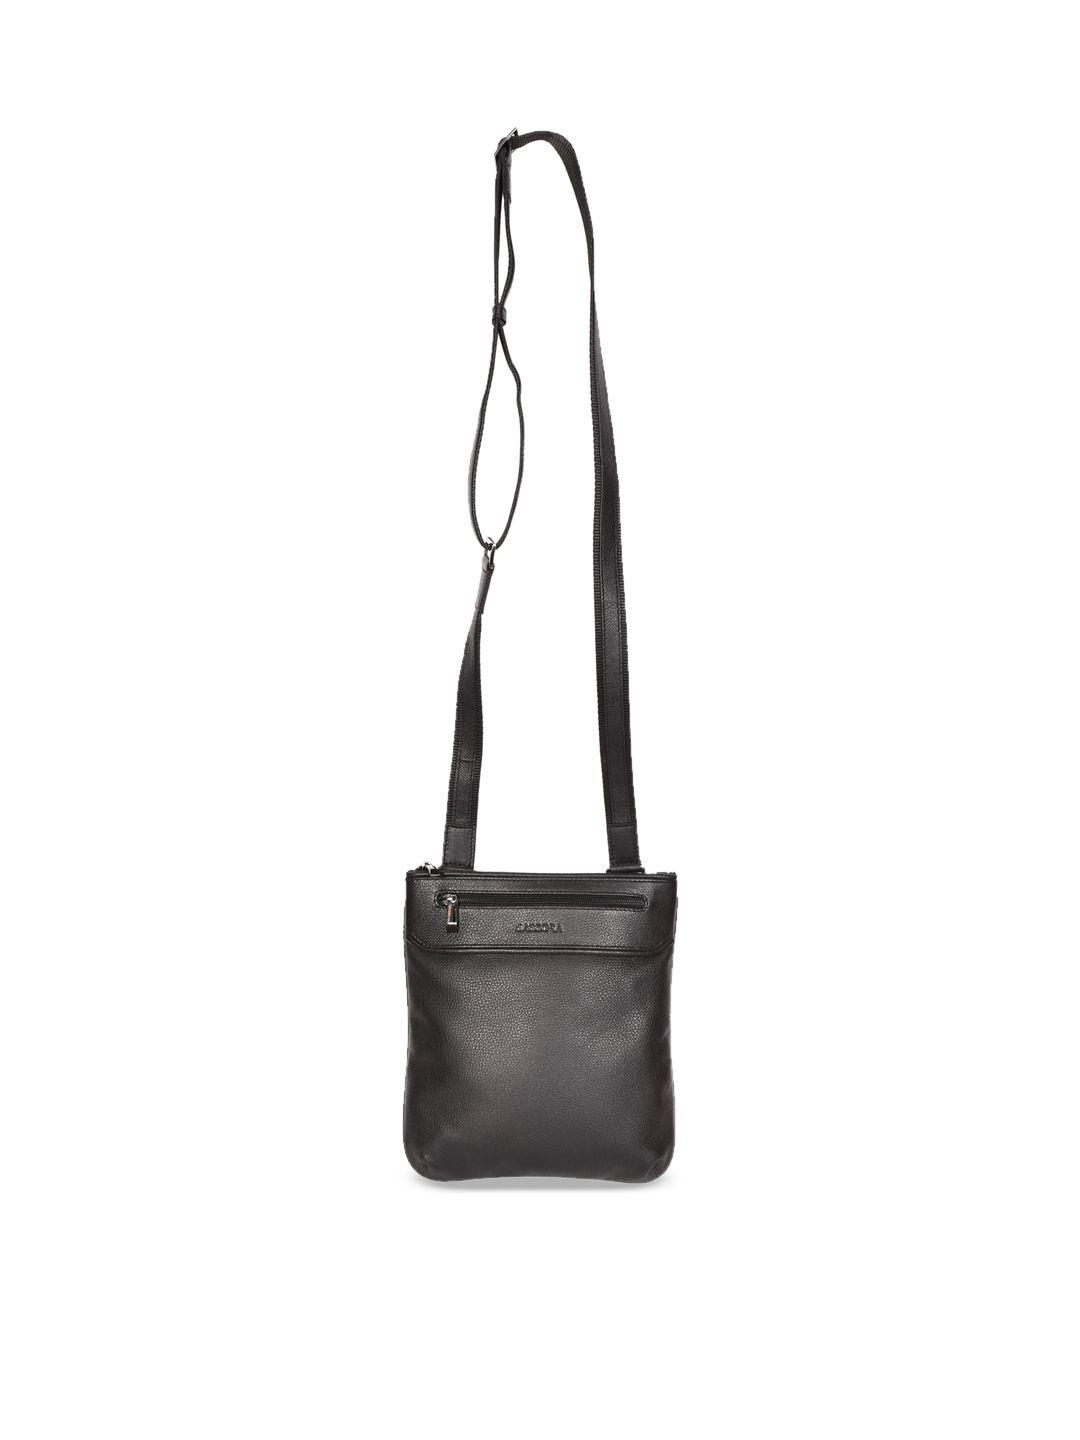 sassora leather structured sling bag